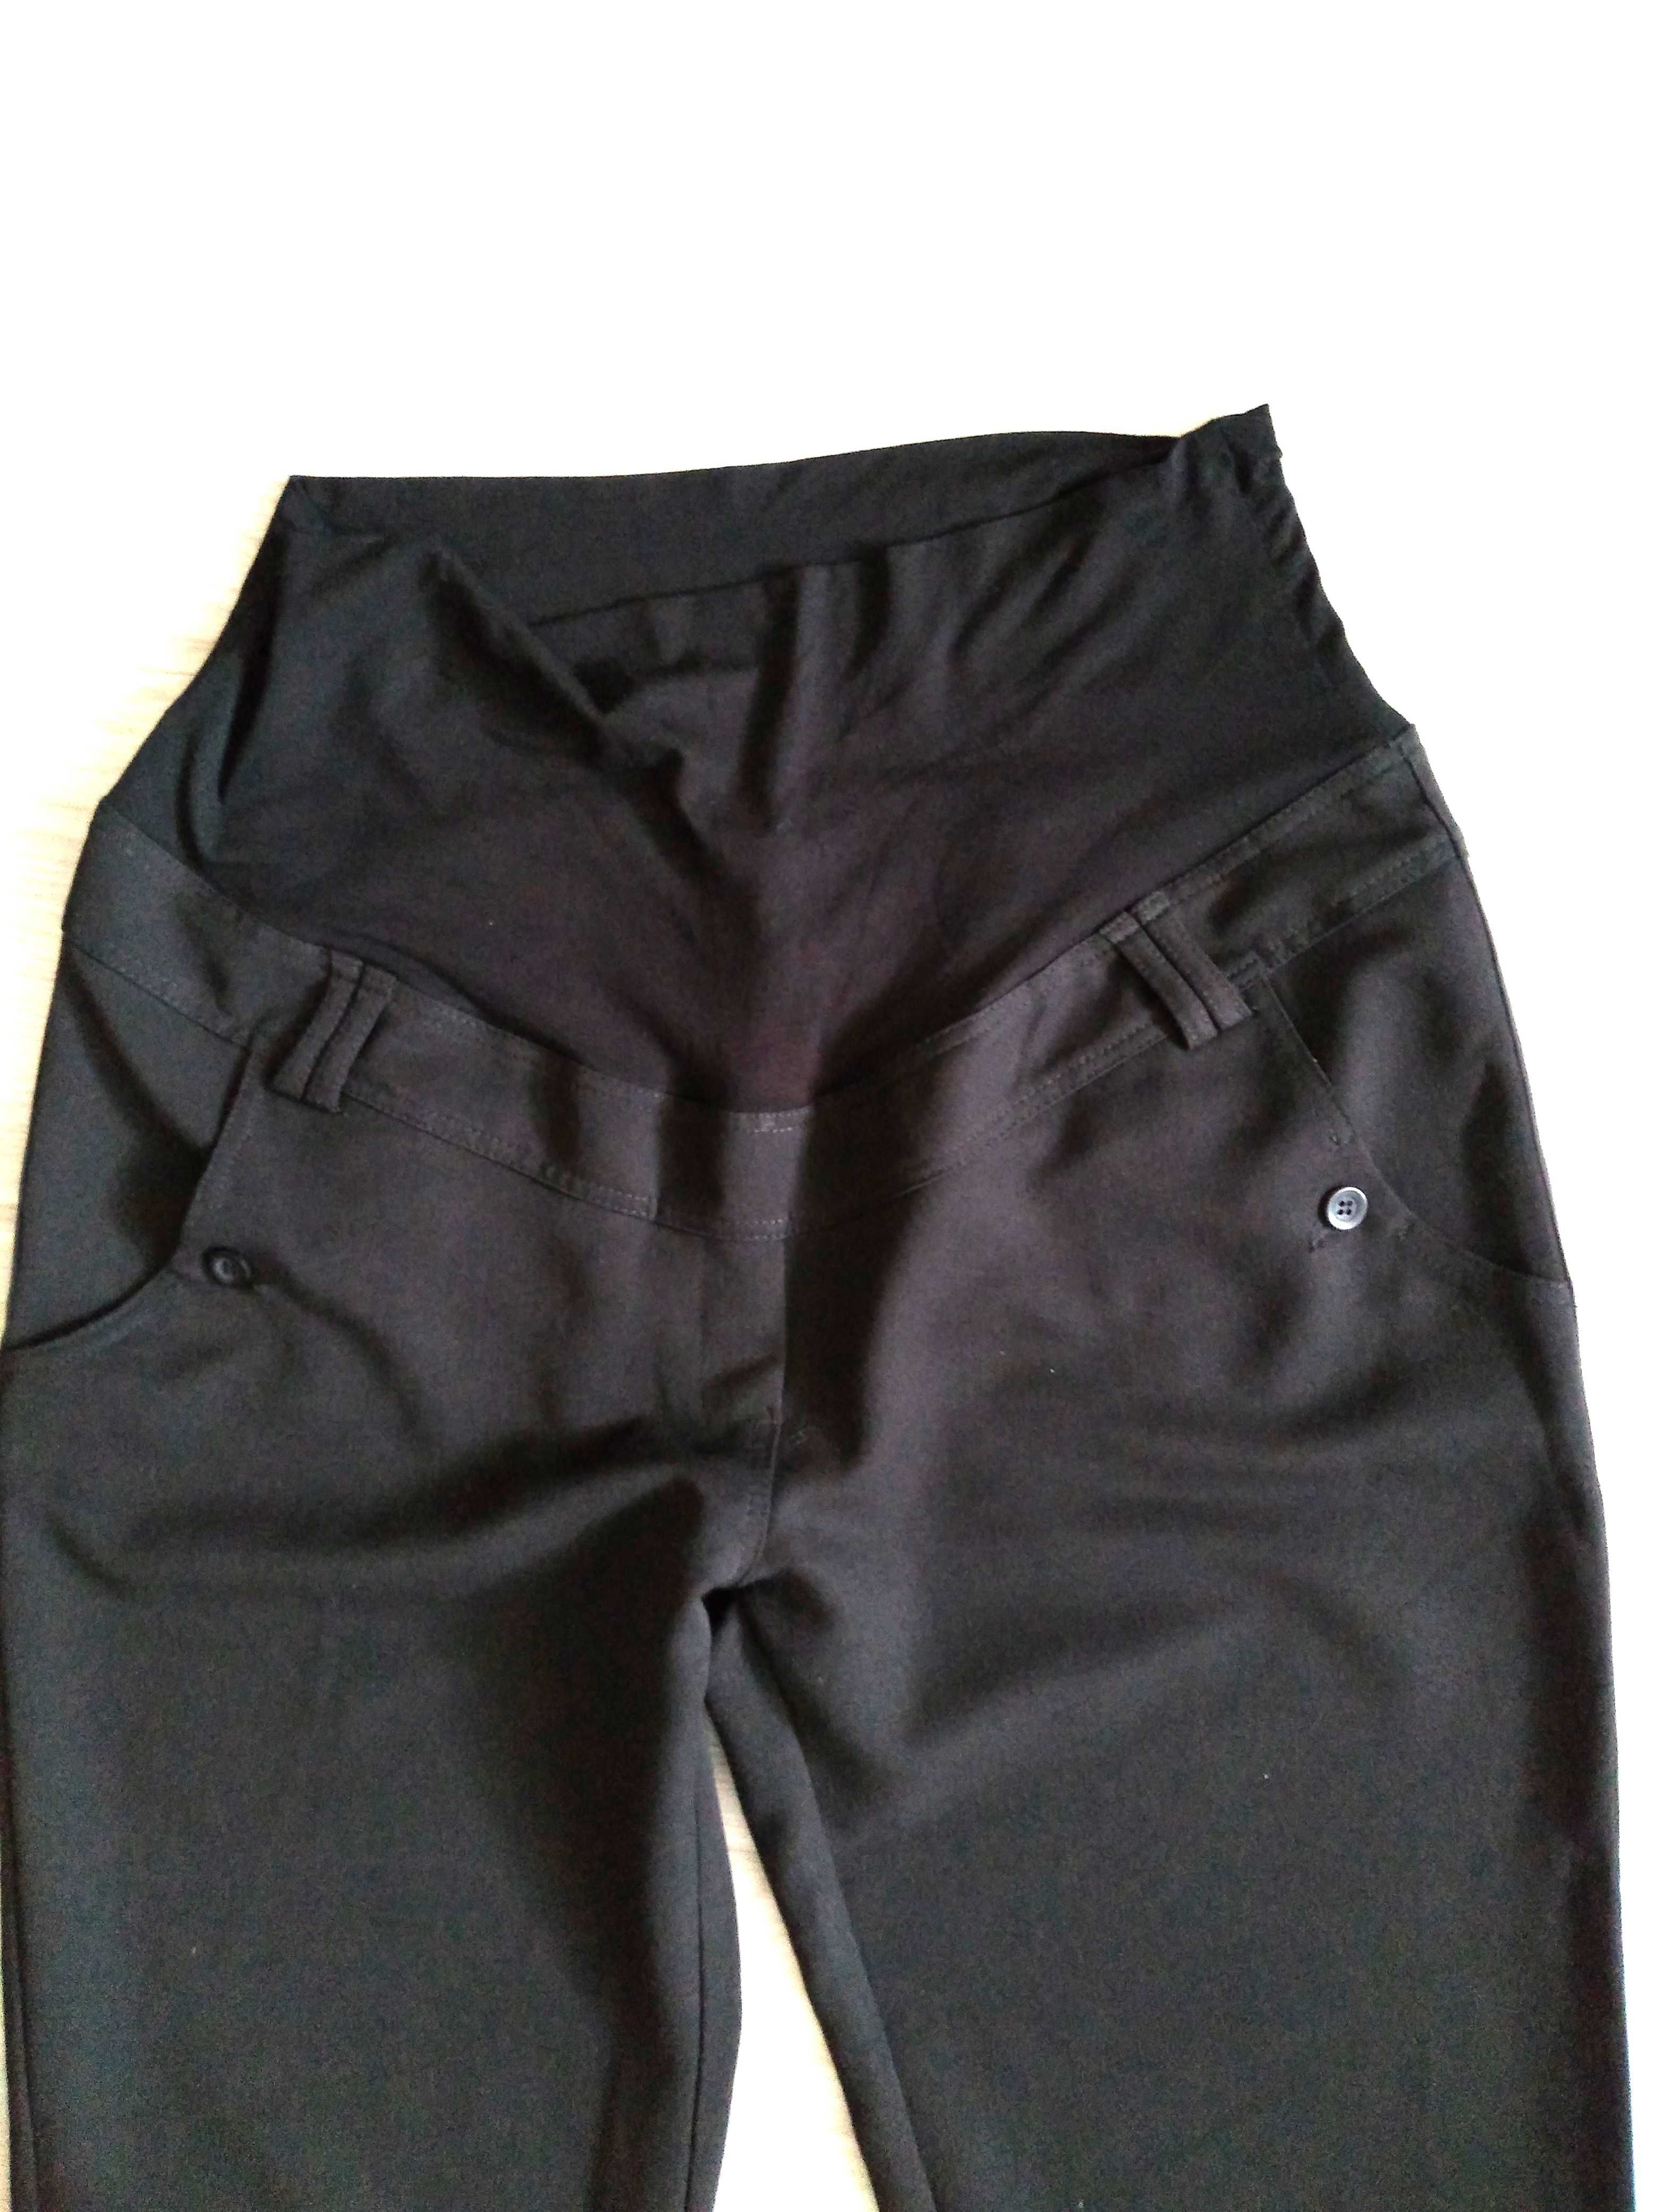 Happymum- Eleganckie czarne spodnie ciążowe - rozm XL